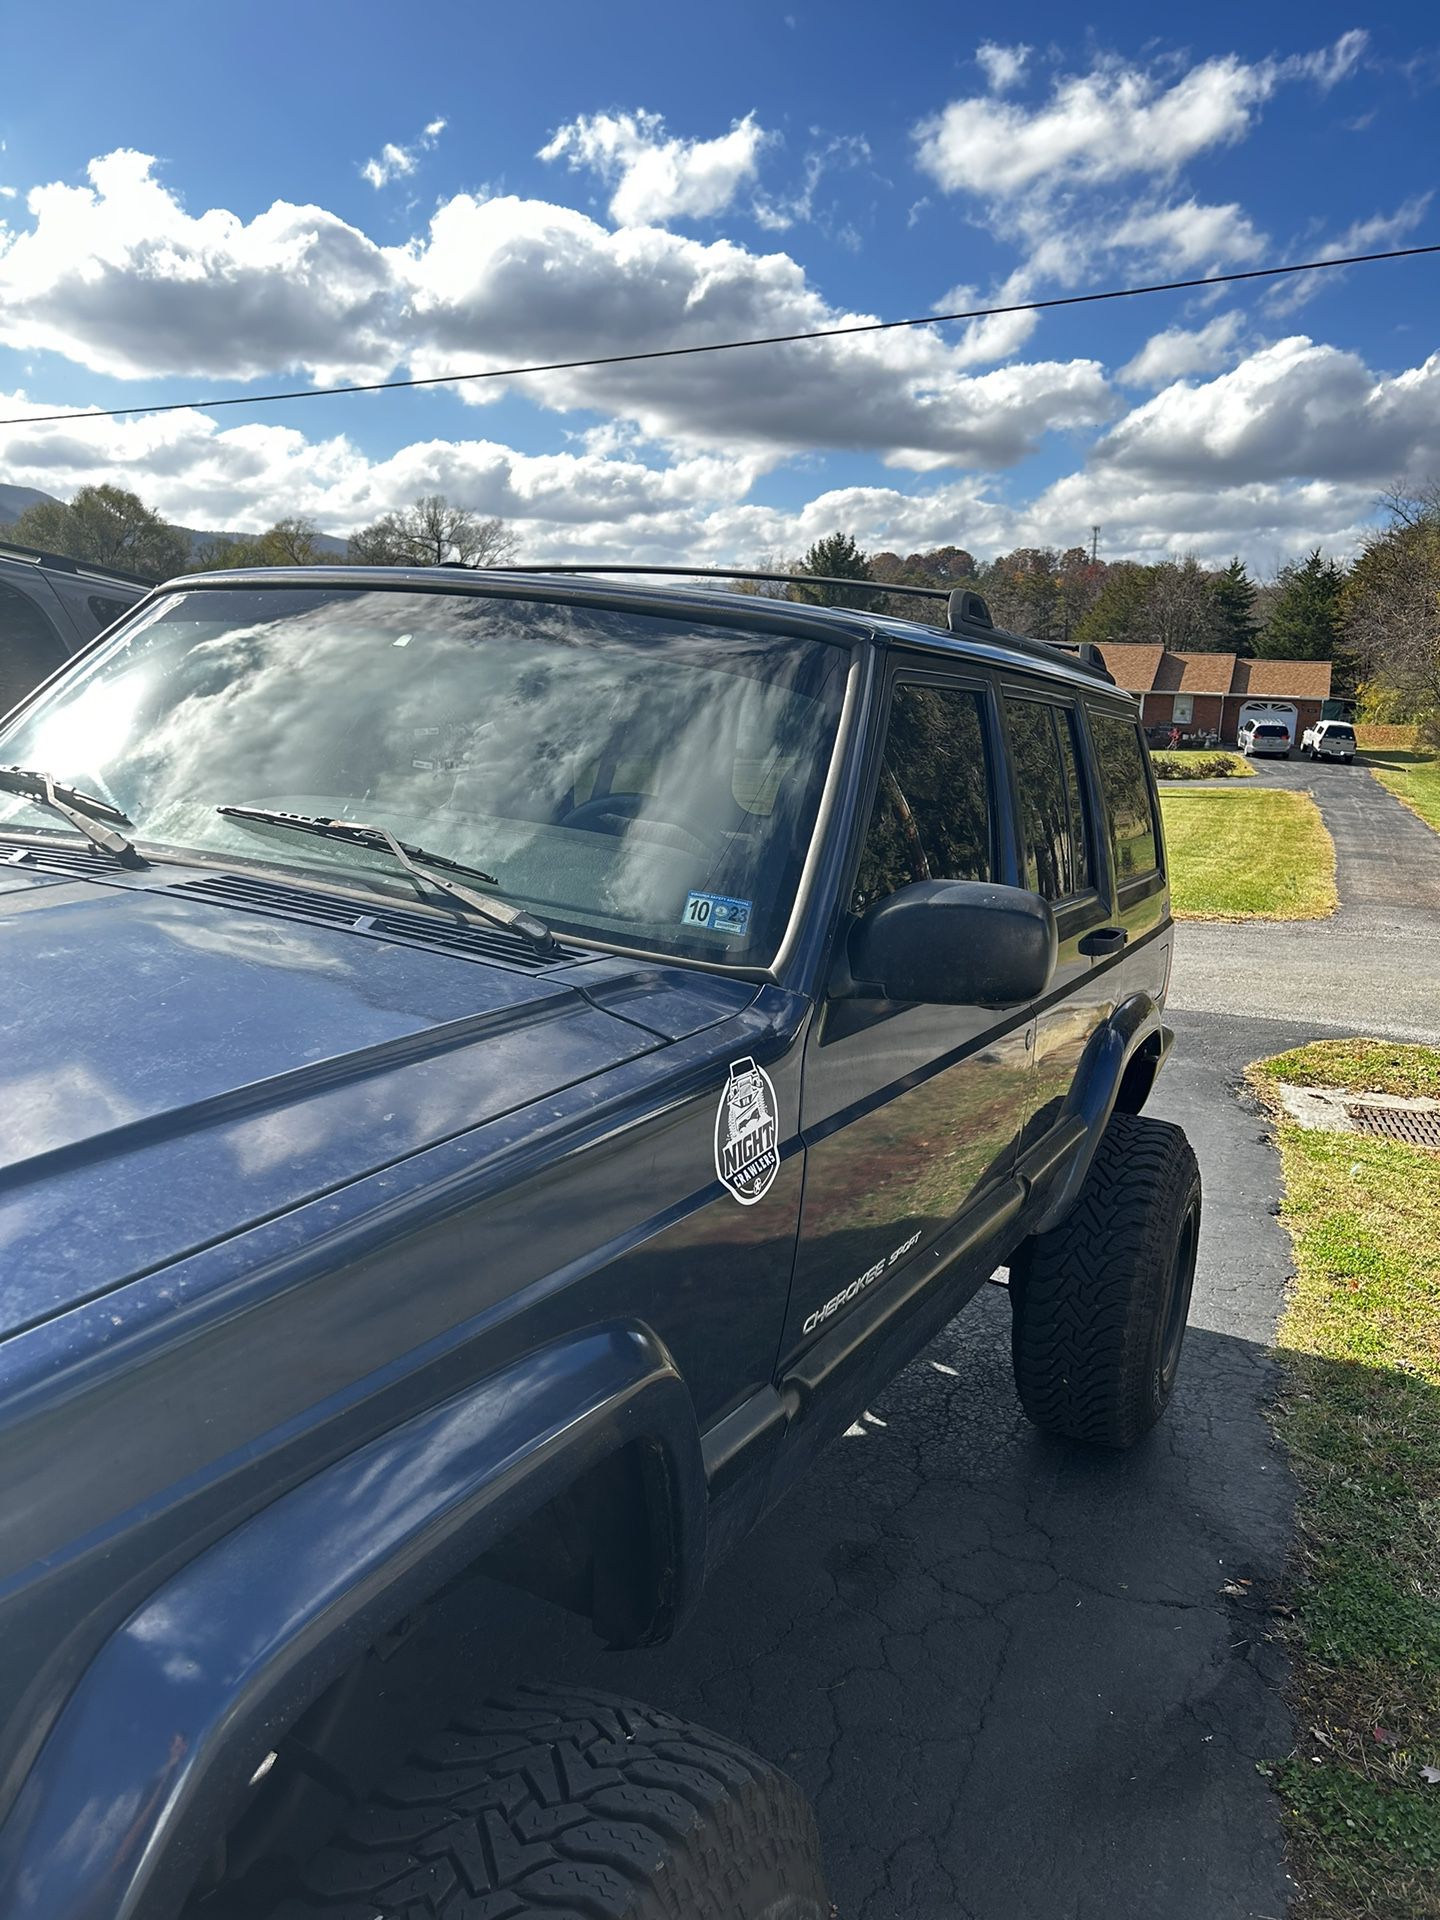 2000 Jeep Cherokee